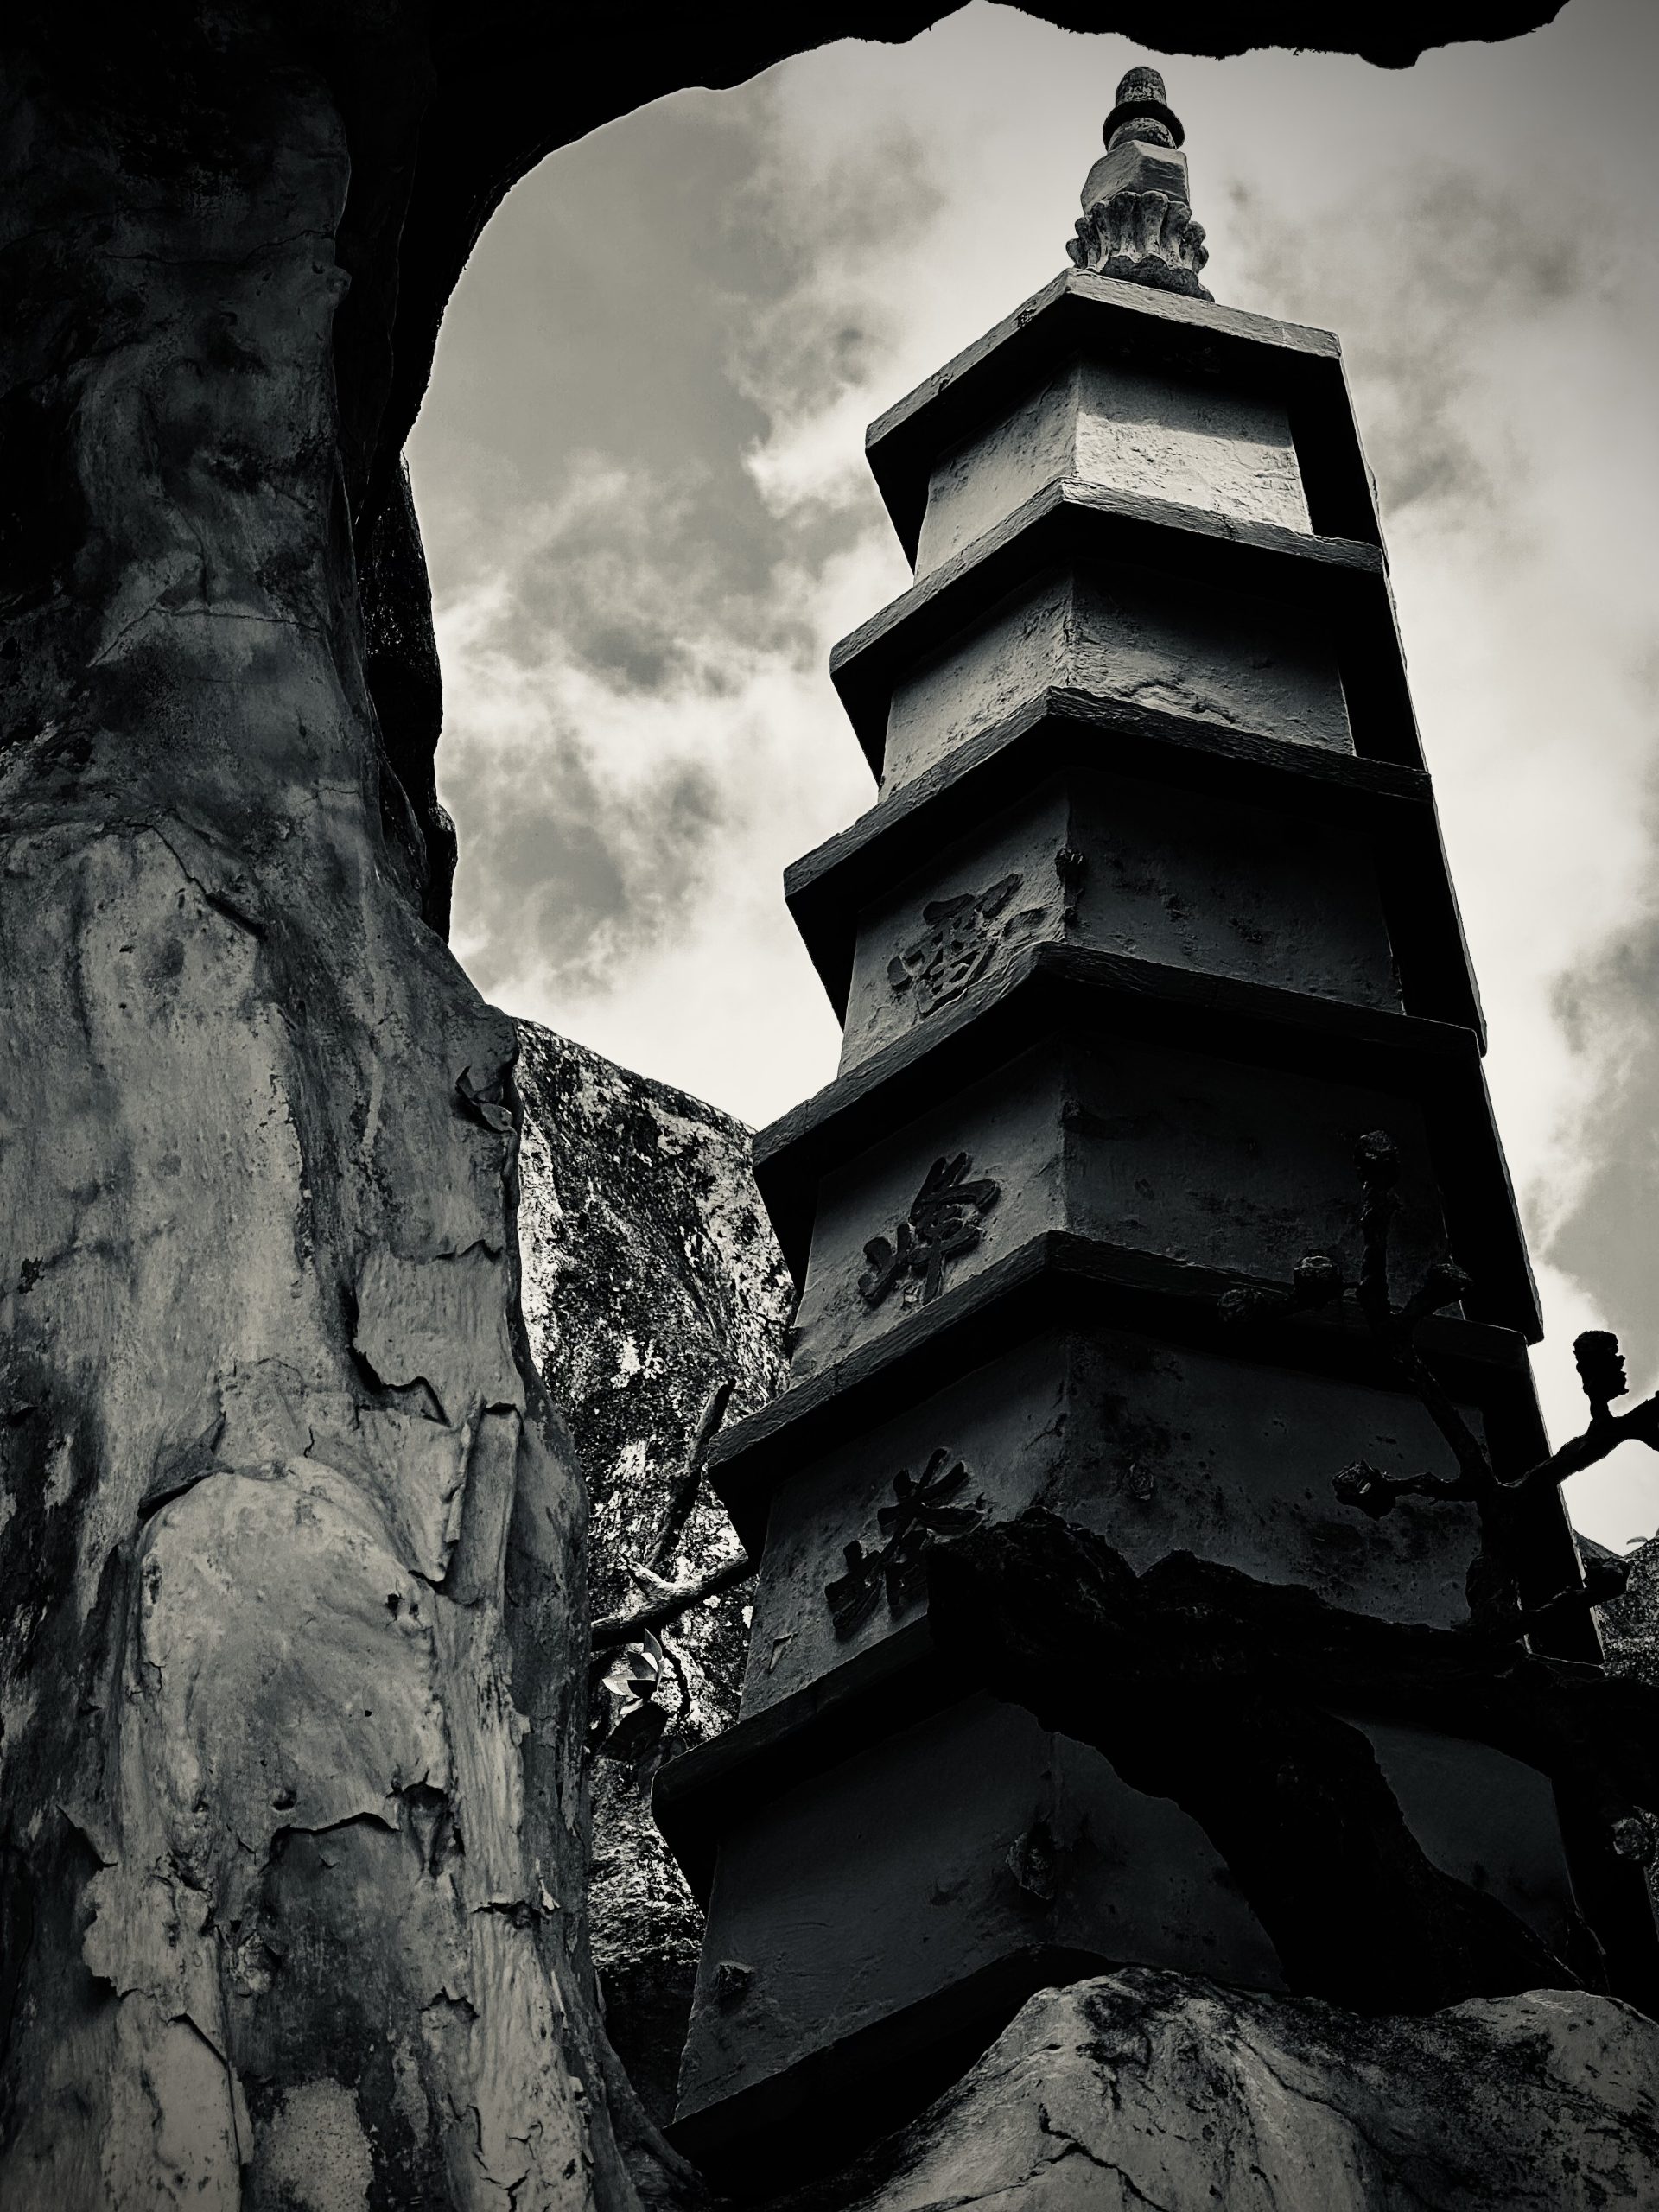 Pagoda Tower At Haw Par Villa